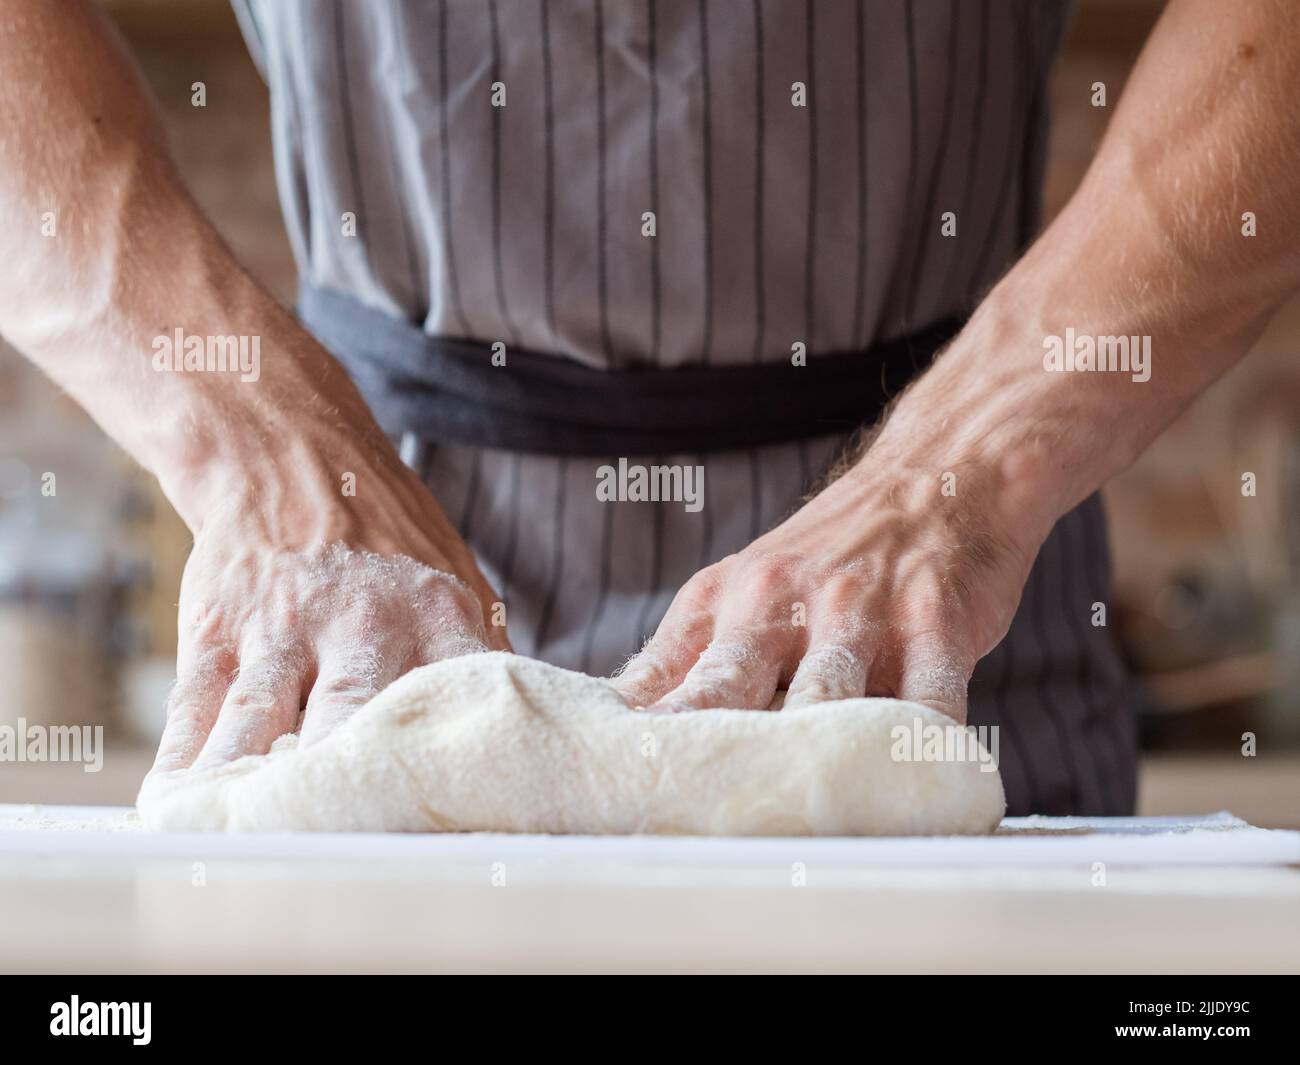 cuisson de pain cuisine homme mains pétrissez la pâte Banque D'Images